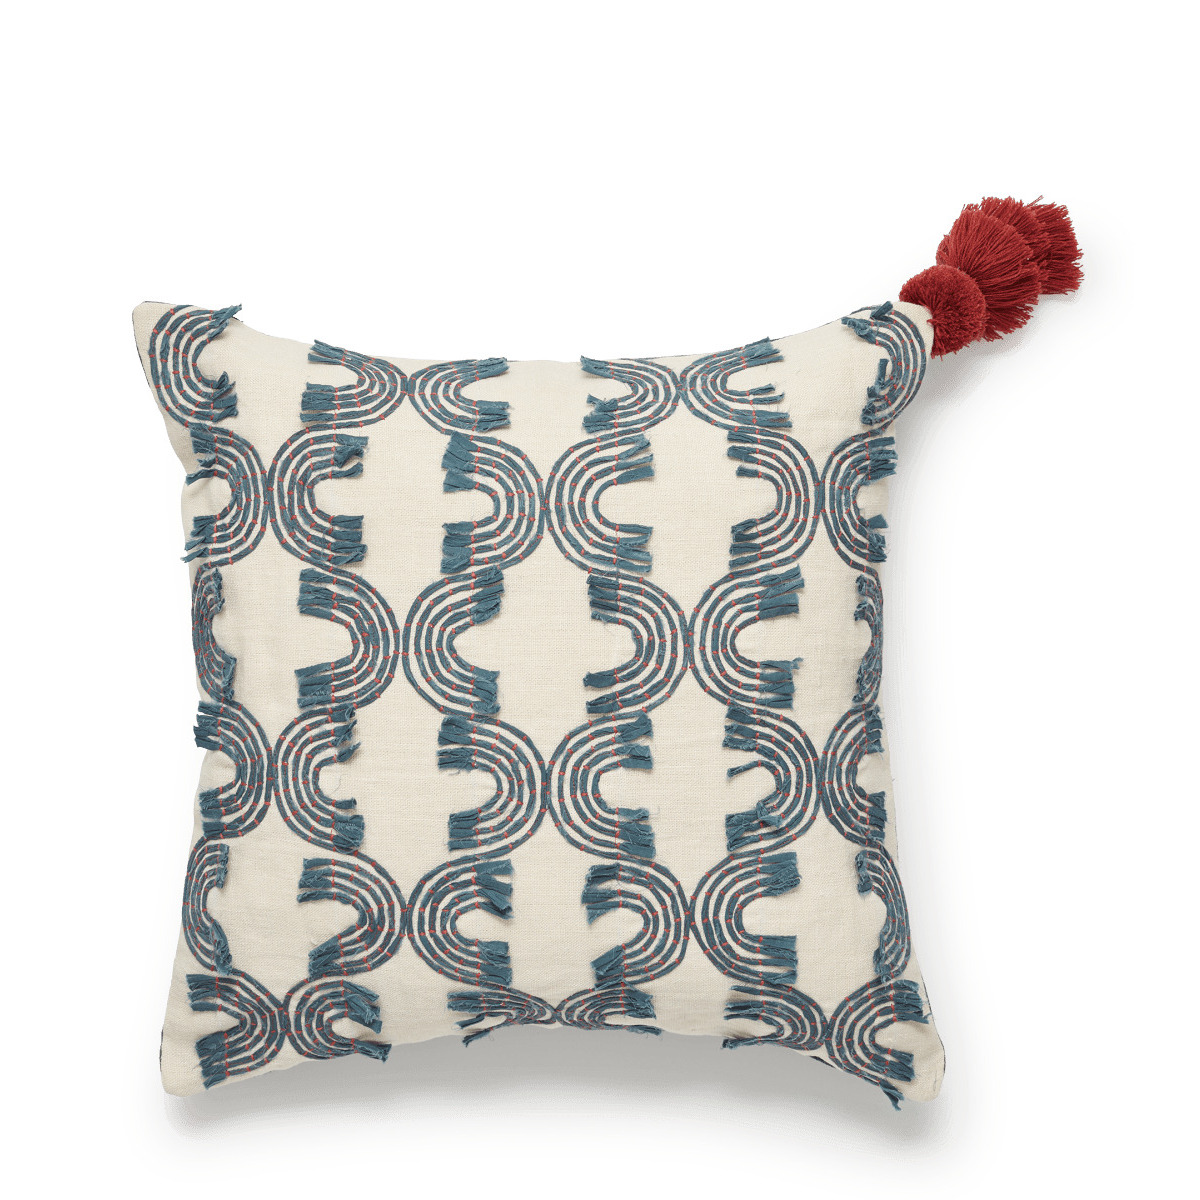 OKA, Kailani Curve Cushion Cover - Indigo/White, Cushion Covers, Linen, Geometric